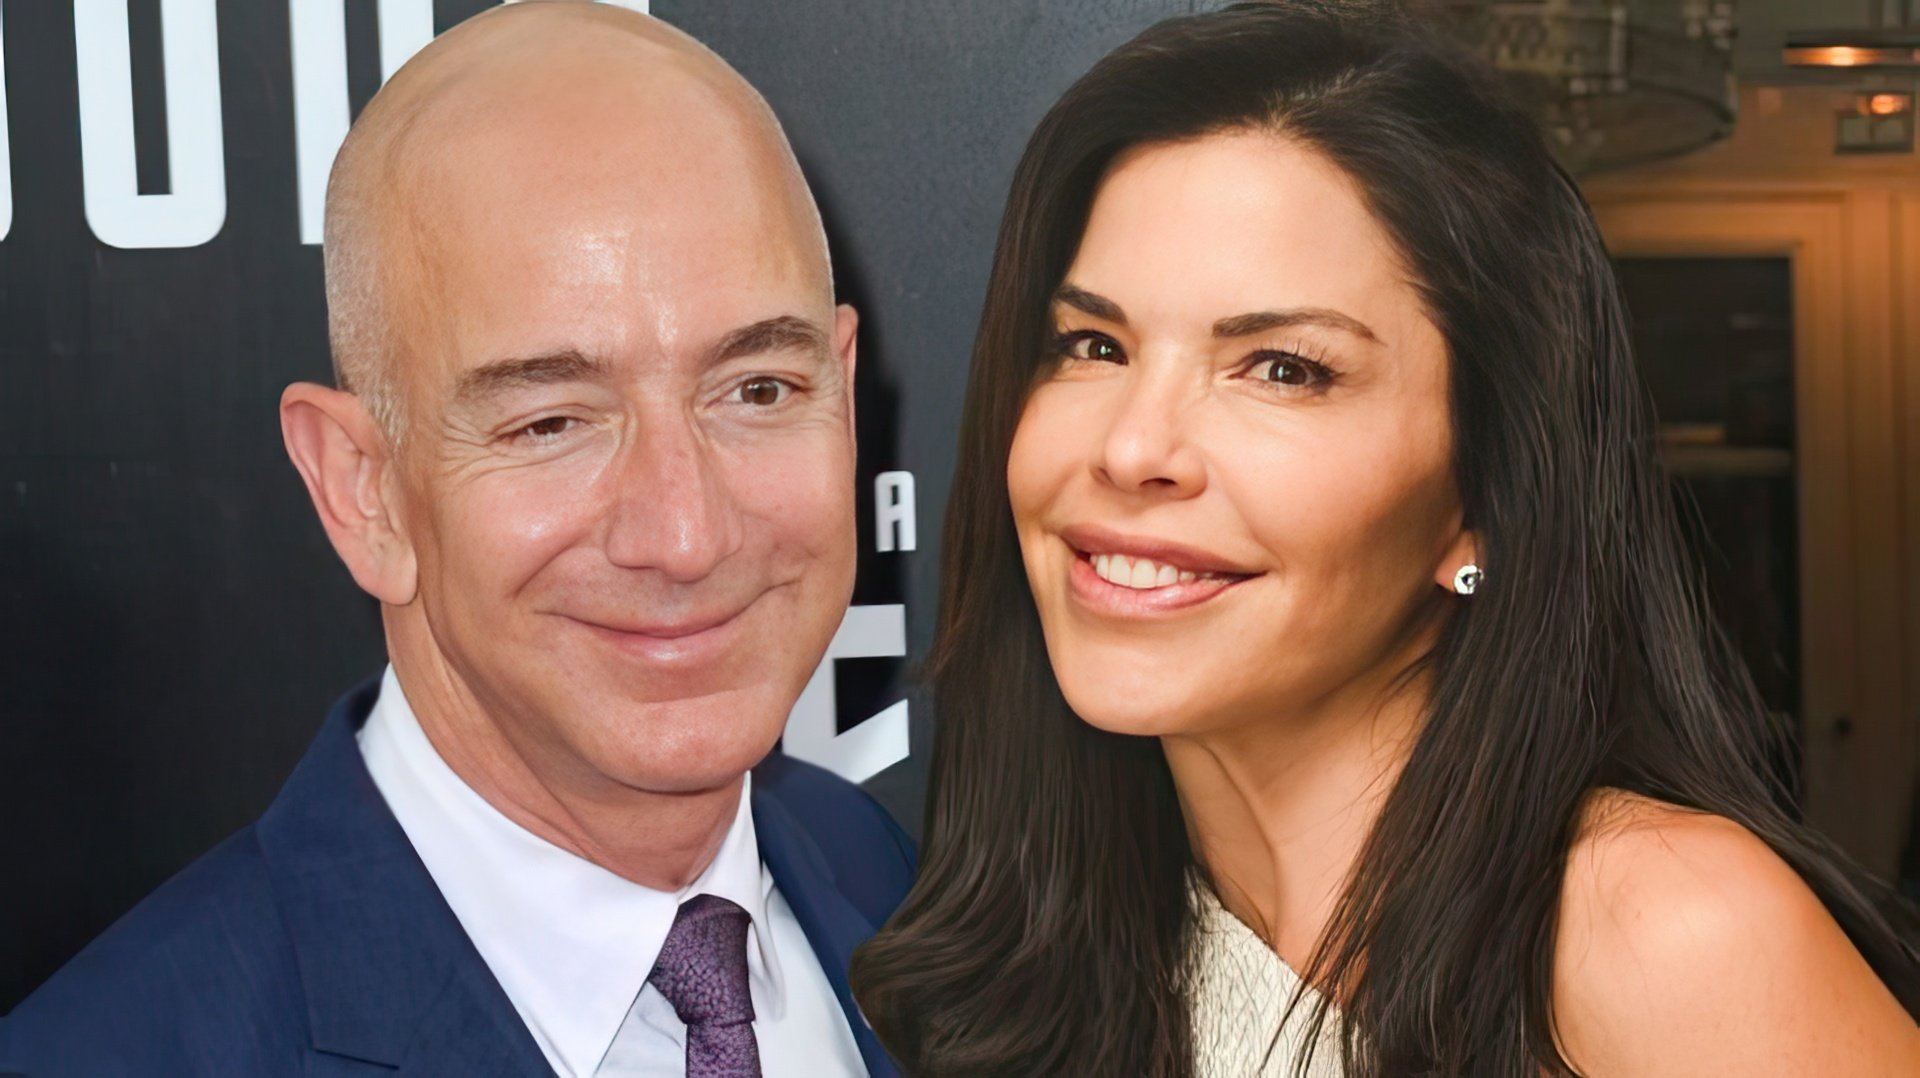 Jeff Bezos and Lauren Sánchez